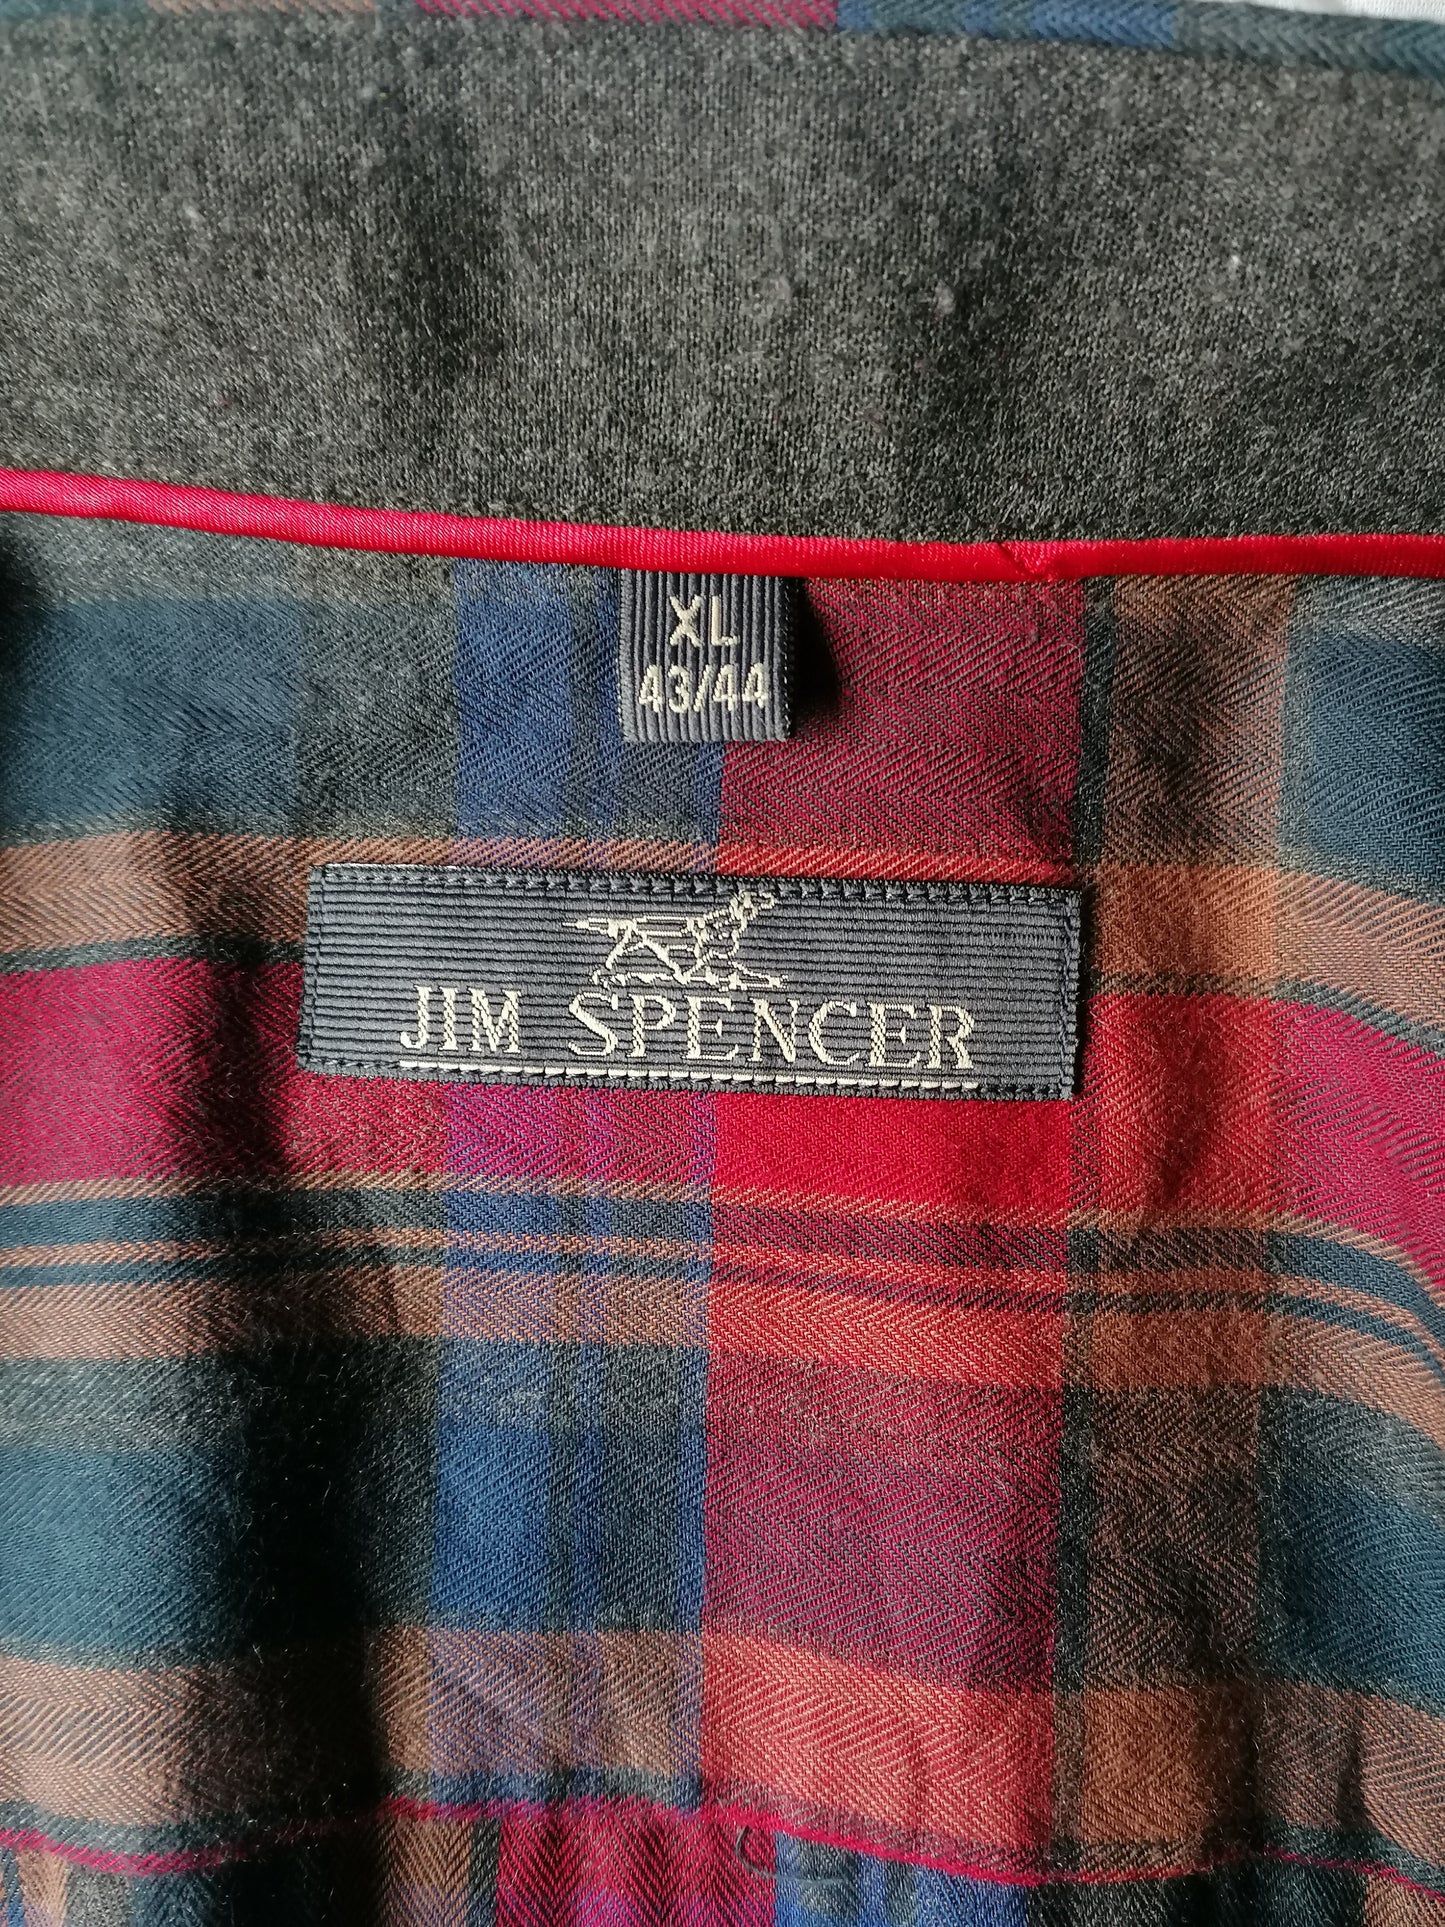 Jim Spencer Shirt. Rotblau -Braun überprüft. Größe xl.